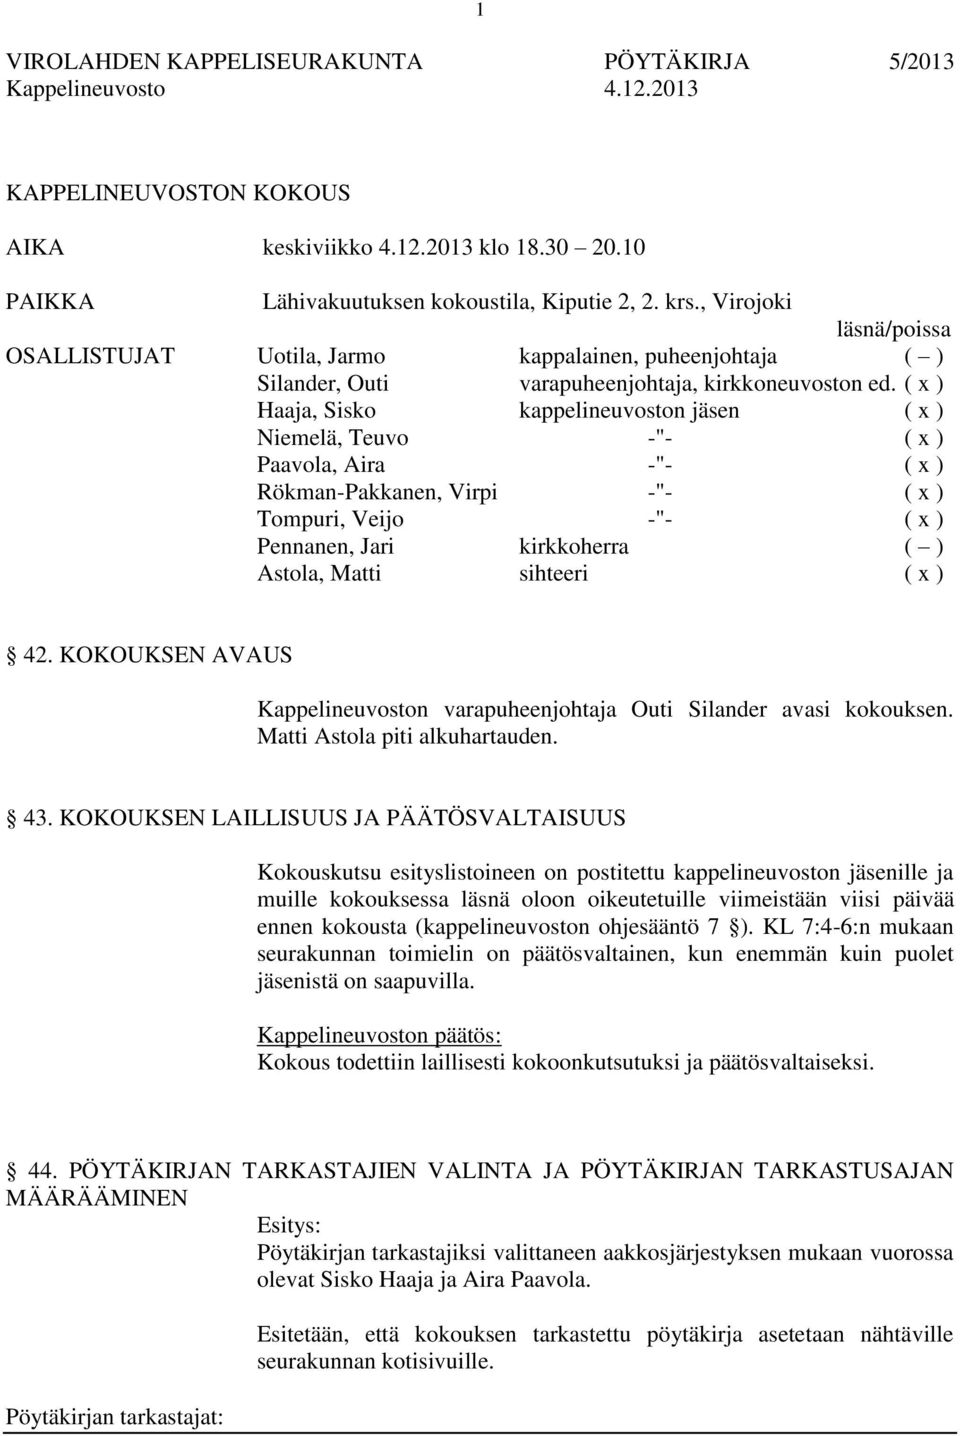 ( x ) Haaja, Sisko kappelineuvoston jäsen ( x ) Niemelä, Teuvo -"- ( x ) Paavola, Aira -"- ( x ) Rökman-Pakkanen, Virpi -"- ( x ) Tompuri, Veijo -"- ( x ) Pennanen, Jari kirkkoherra ( ) Astola, Matti